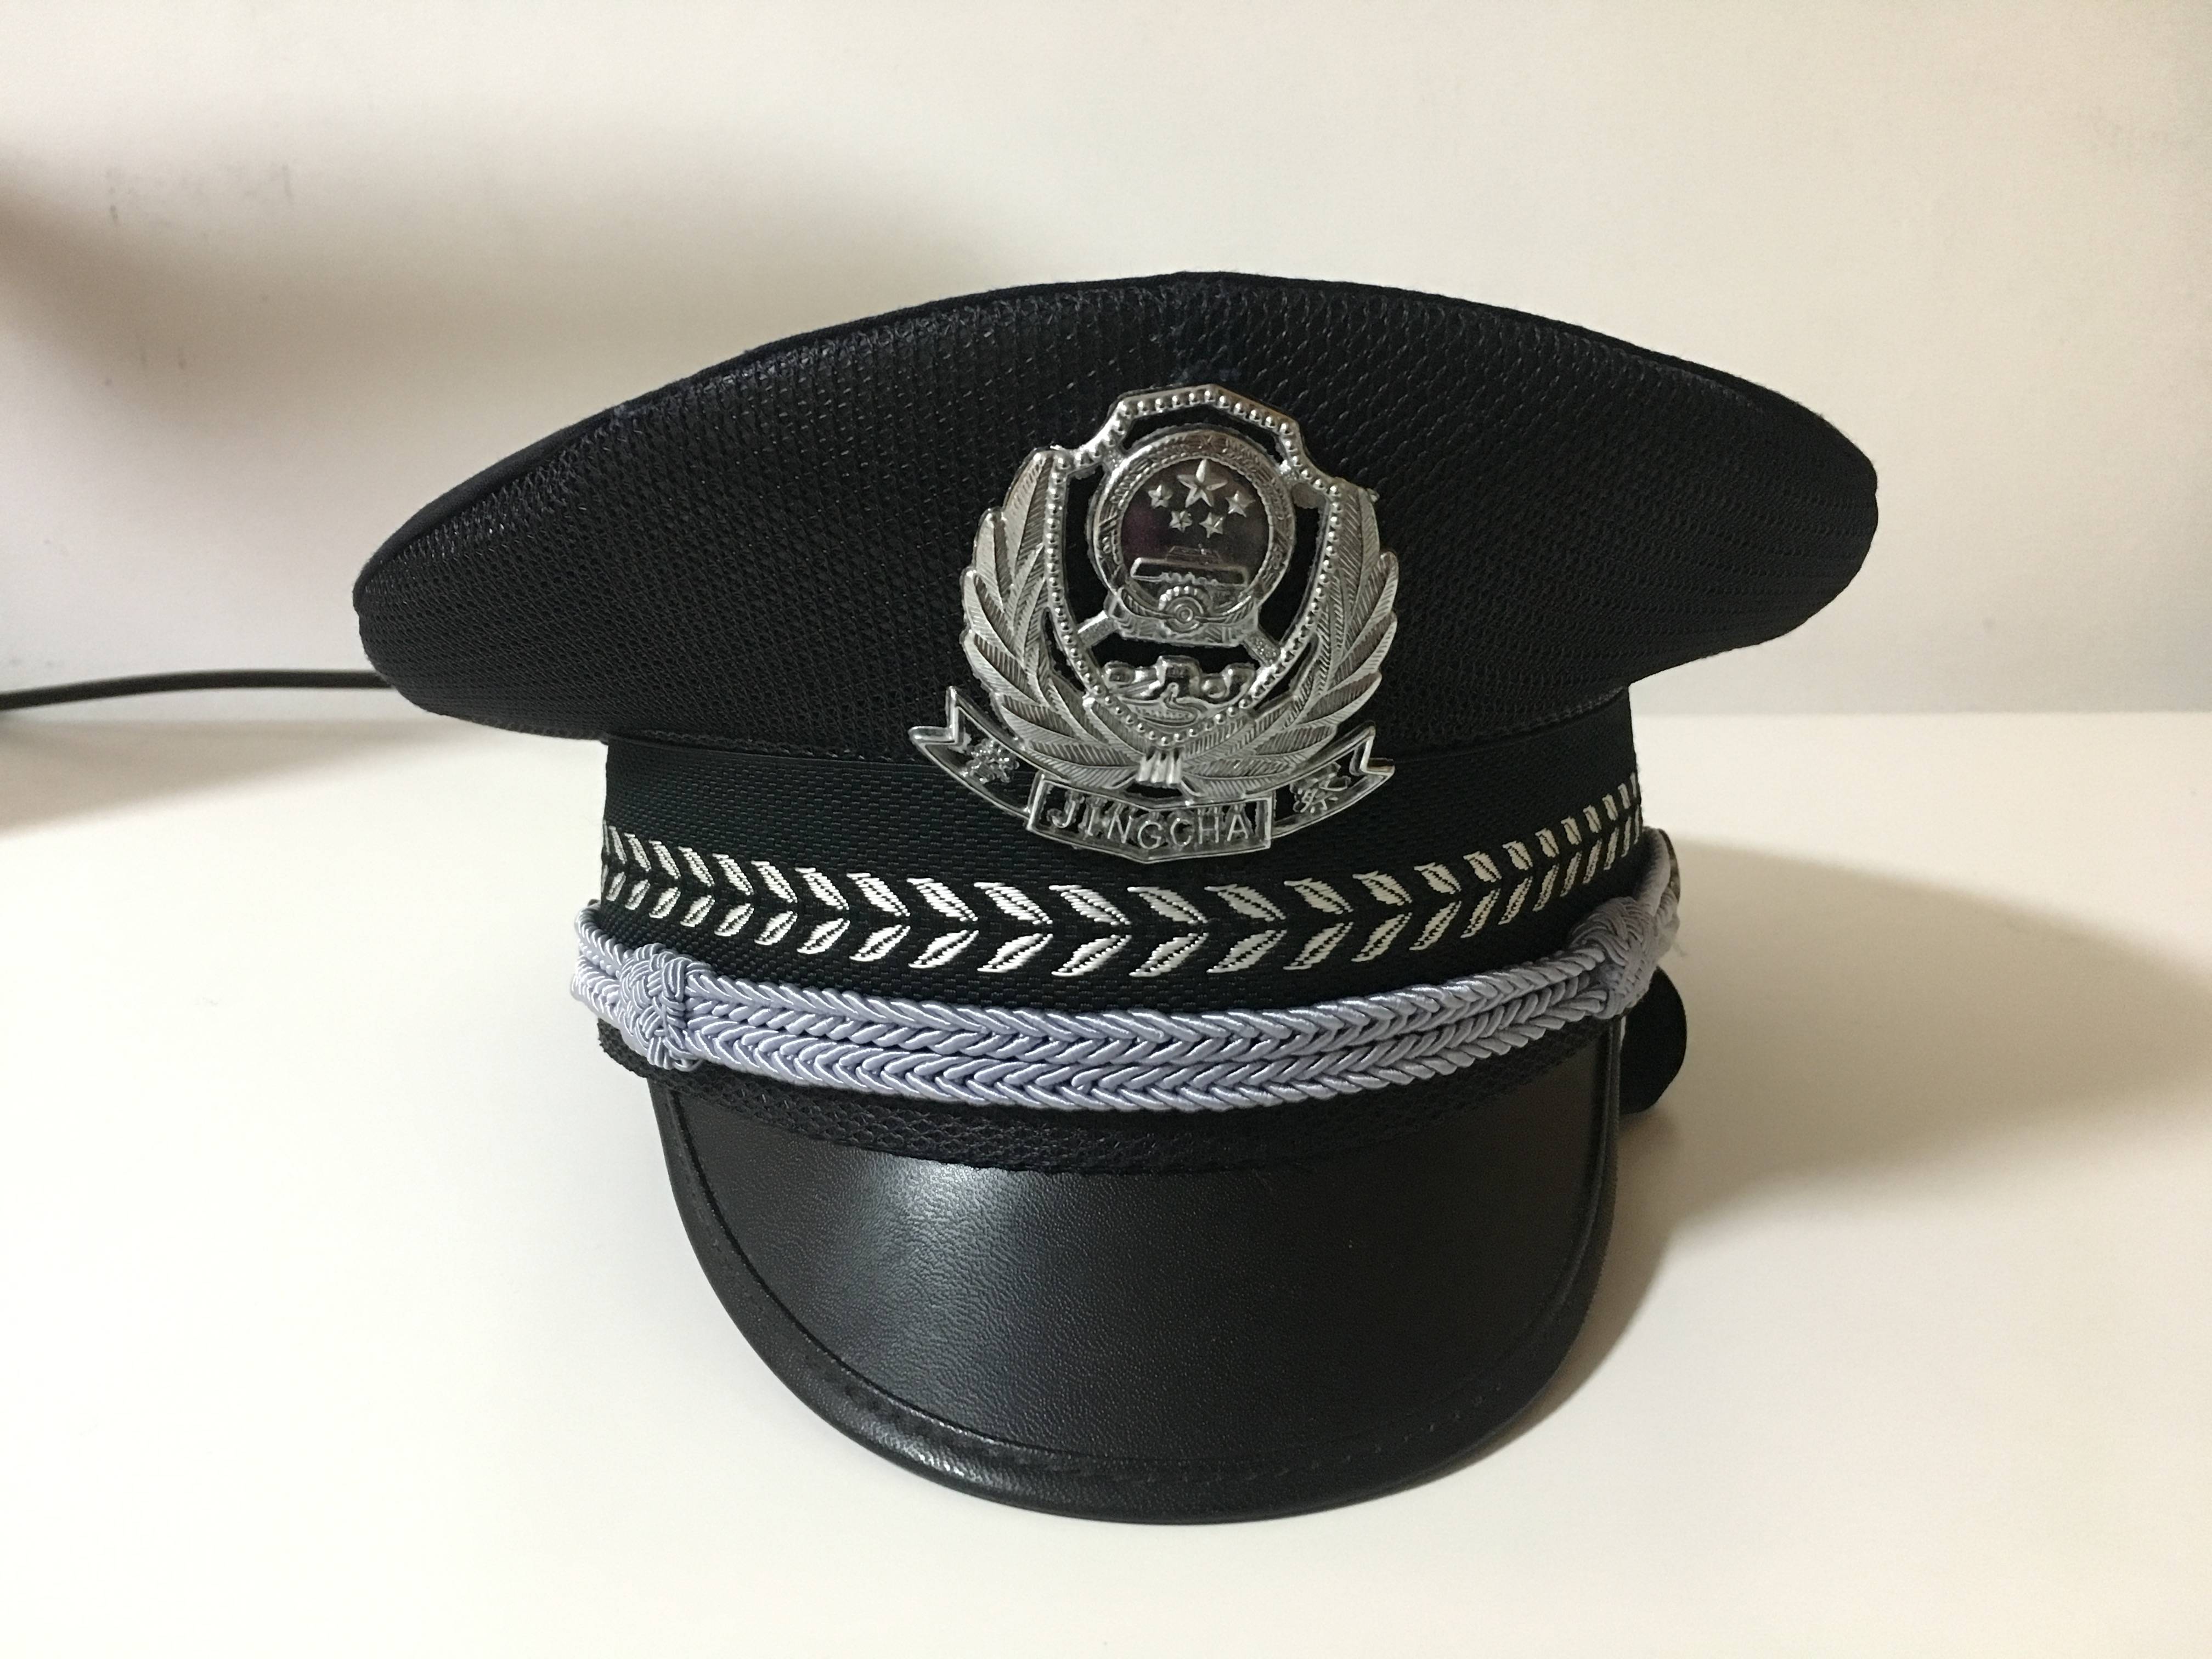 警察帽子图案图片